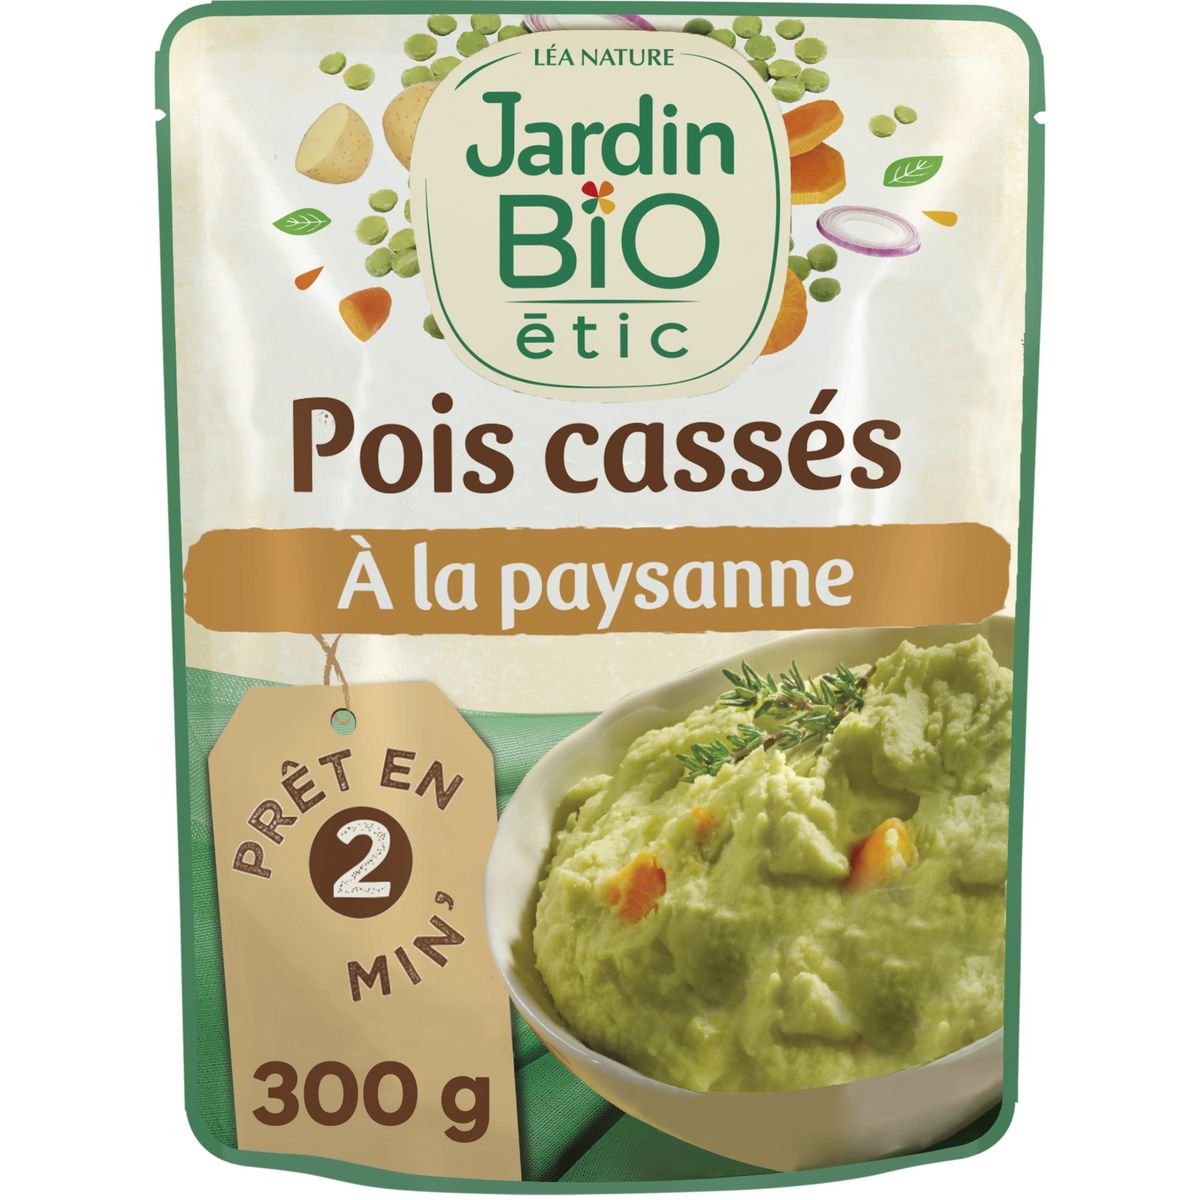 JARDIN BIO ETIC Pois cassés paysanne carottes pommes de terre sachet express 300g